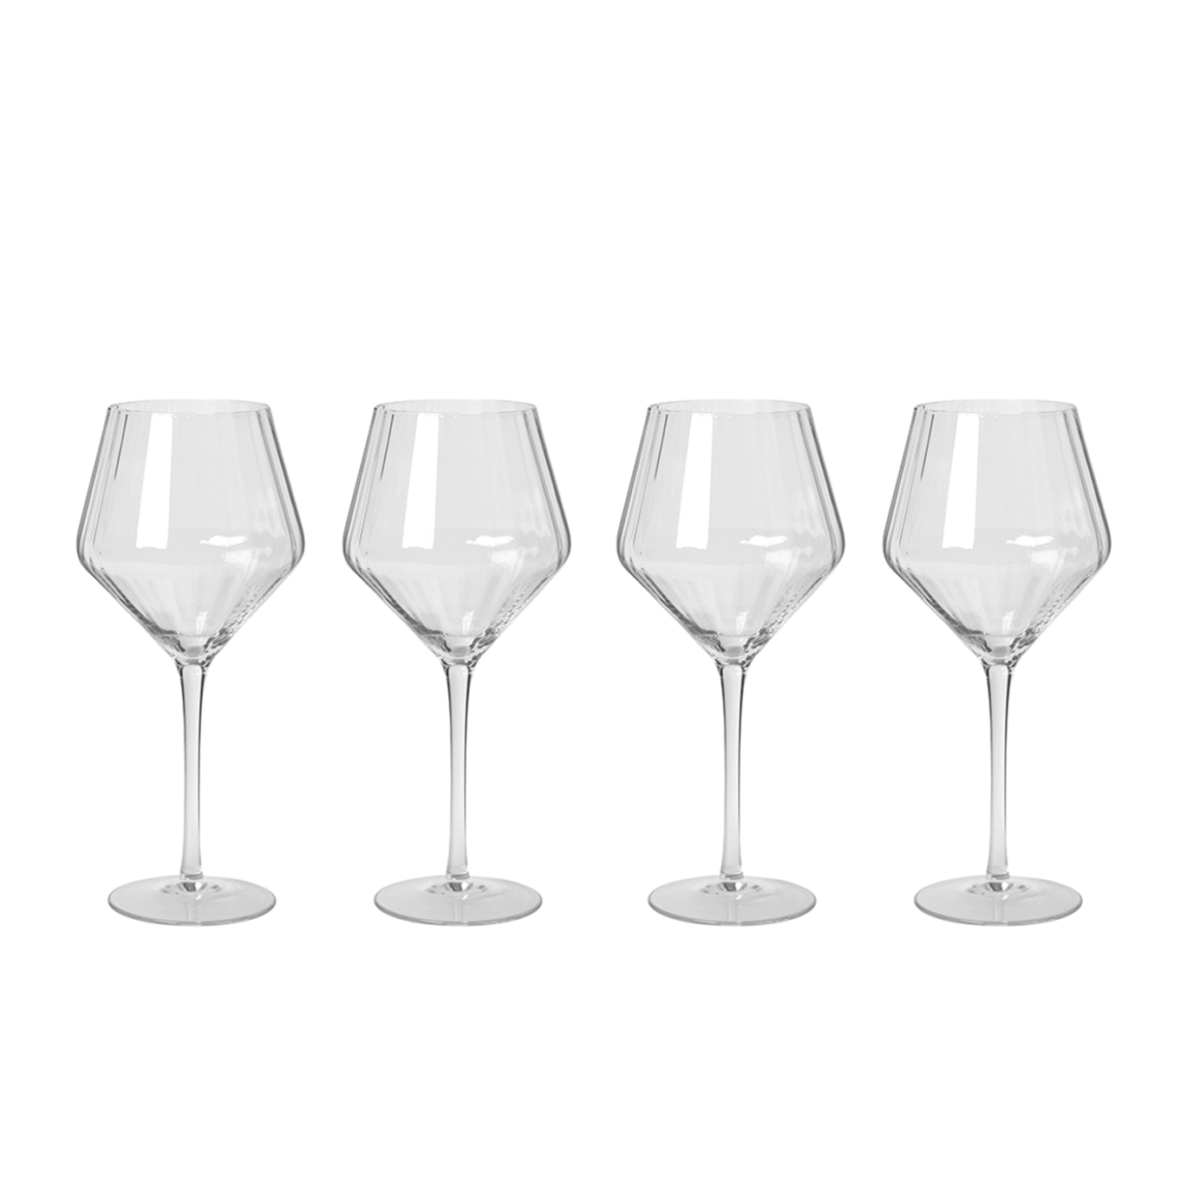 Sandvig Bourgogne Glasses Set of 4